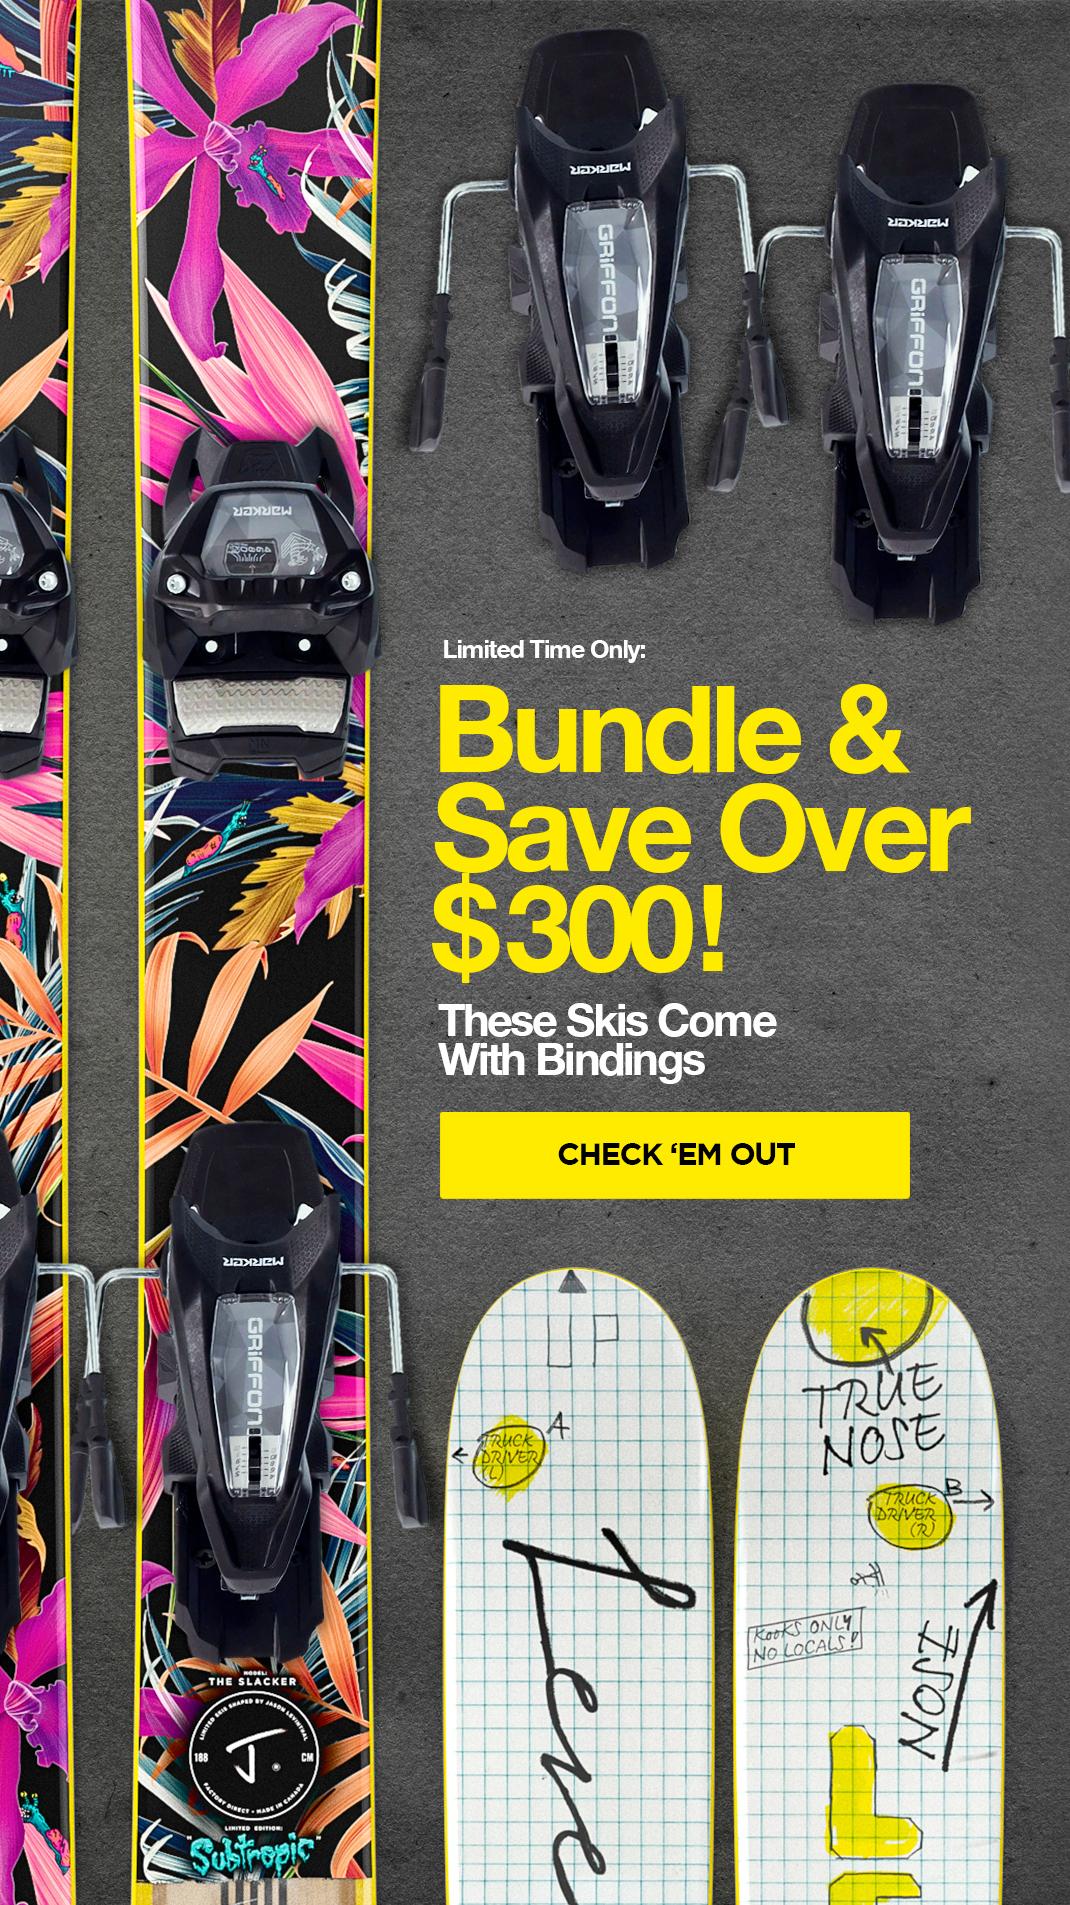 Bundle skis with bindings & save over $300!